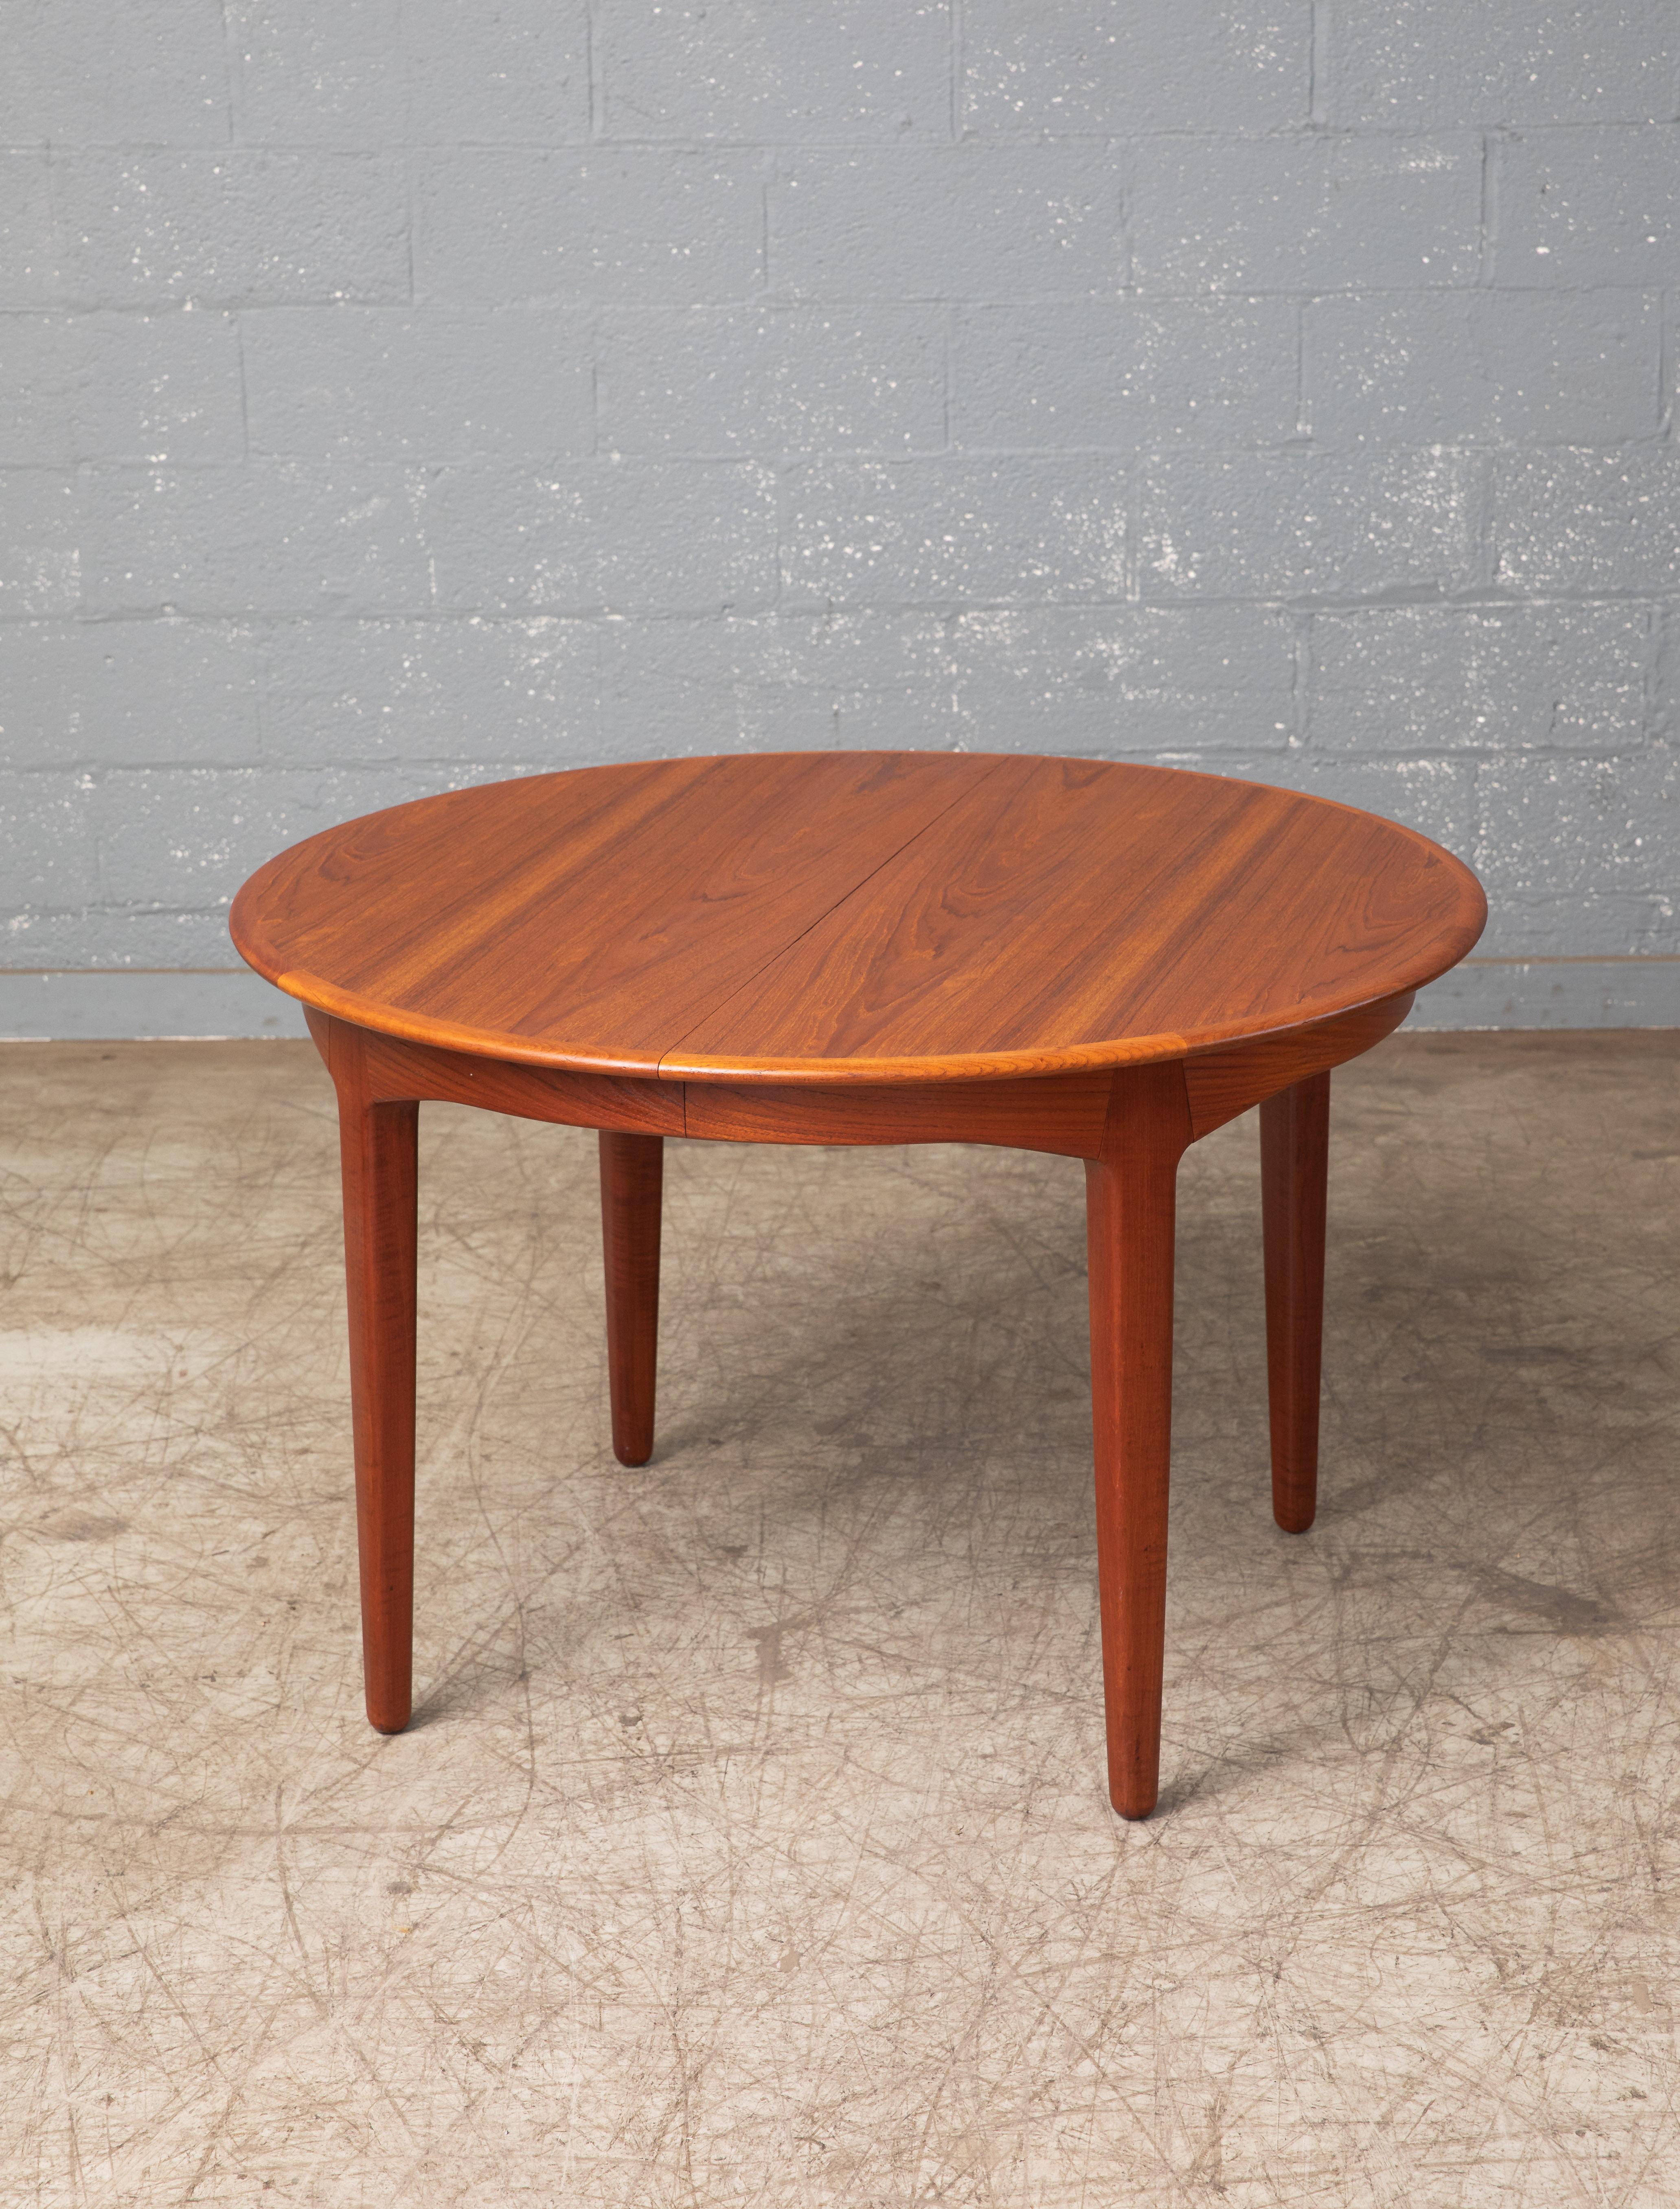 Magnifique table à manger ronde en teck conçue par le célèbre designer Henning Kjaernulf pour Sorø Stolefabrik en 1962. La table ronde a un diamètre de 45 pouces et peut accueillir confortablement quatre personnes. Elle est livrée avec trois